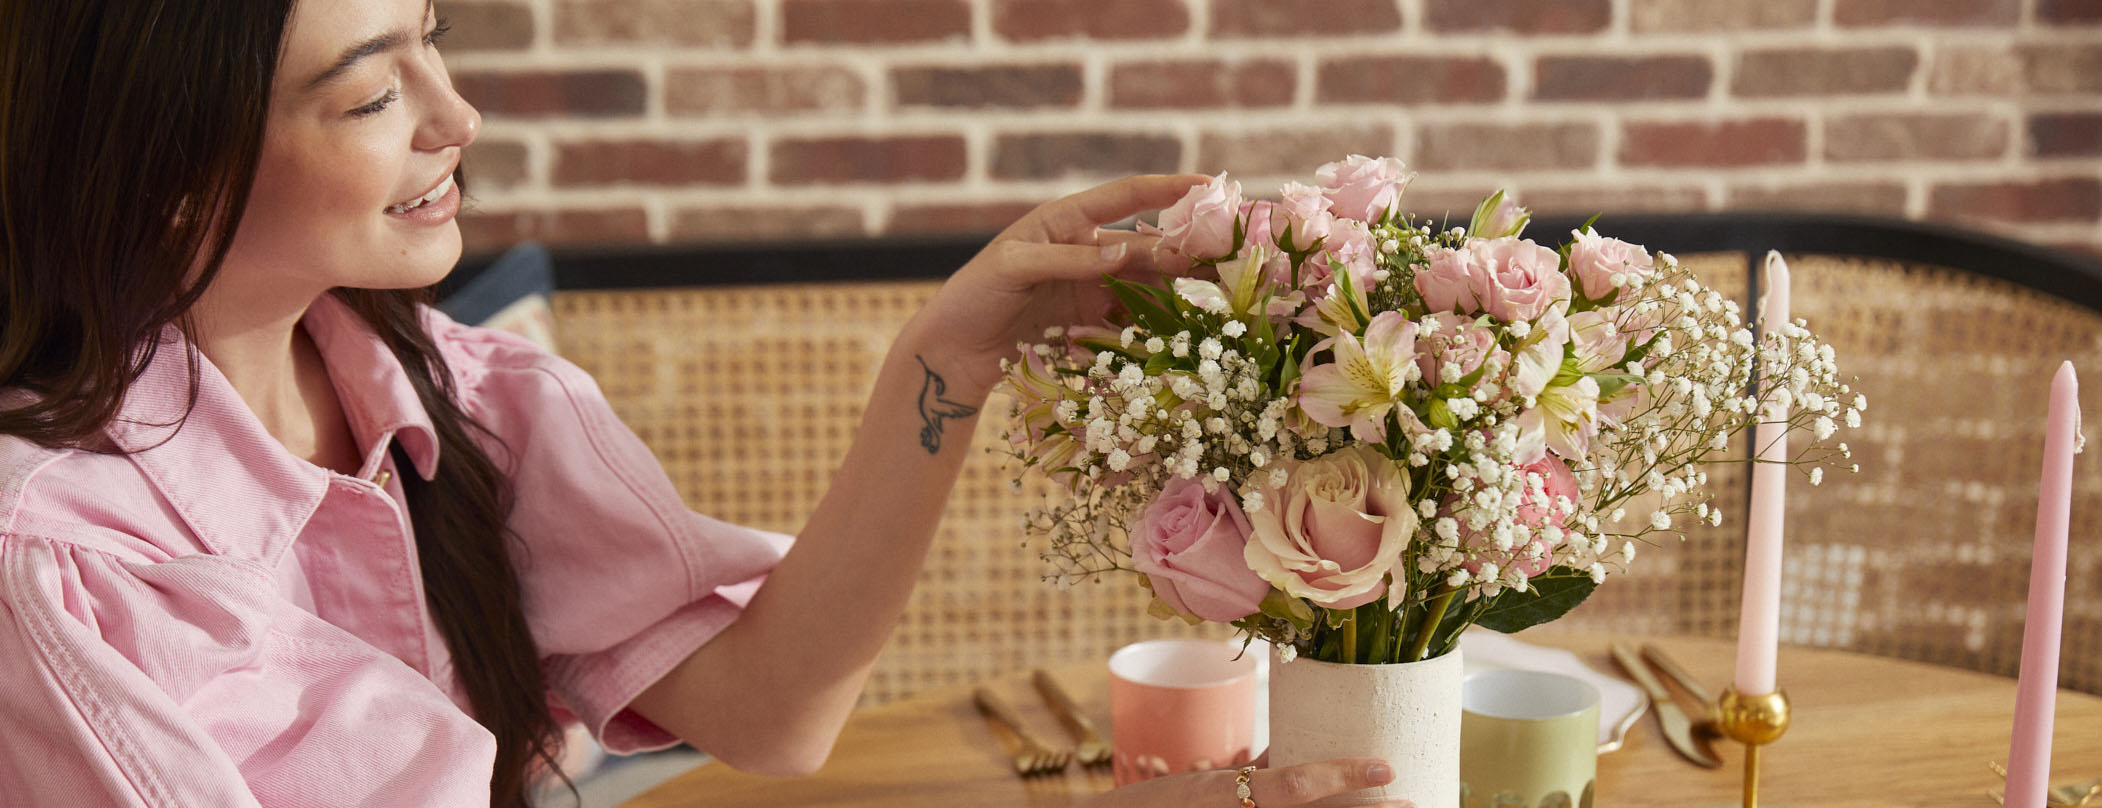 12 Best Blooms For Valentine'S Day Flower Arrangements  